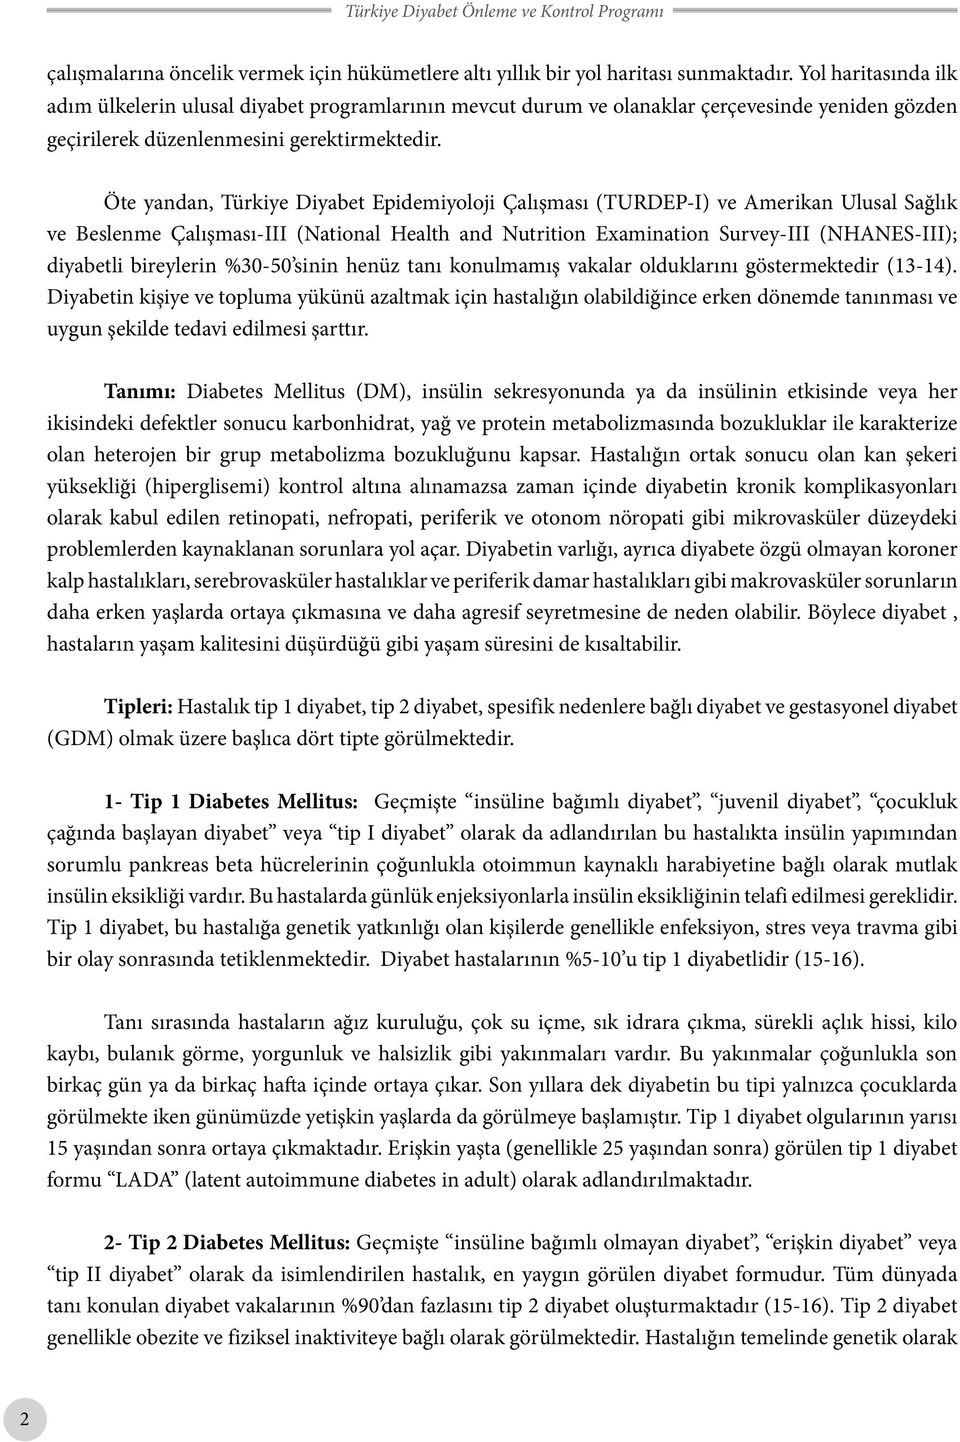 Öte yandan, Türkiye Diyabet Epidemiyoloji Çalışması (TURDEP-I) ve Amerikan Ulusal Sağlık ve Beslenme Çalışması-III (National Health and Nutrition Examination Survey-III (NHANES-III); diyabetli